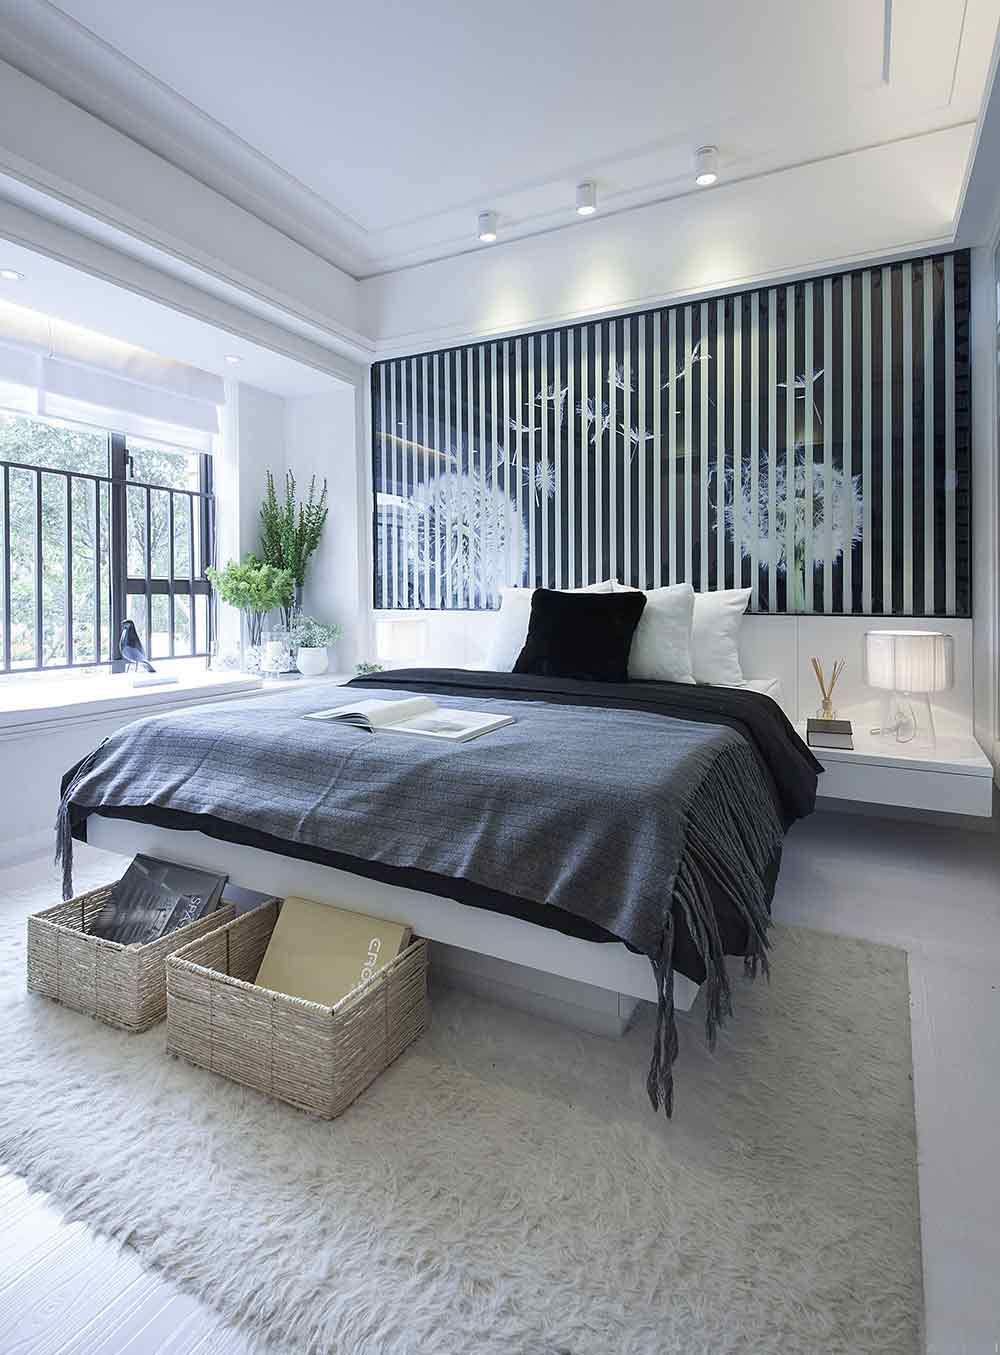 卧室床头的设计呼应了餐厅的装饰，在黑、白、灰的调和中，房间显得更为明亮而轻盈。